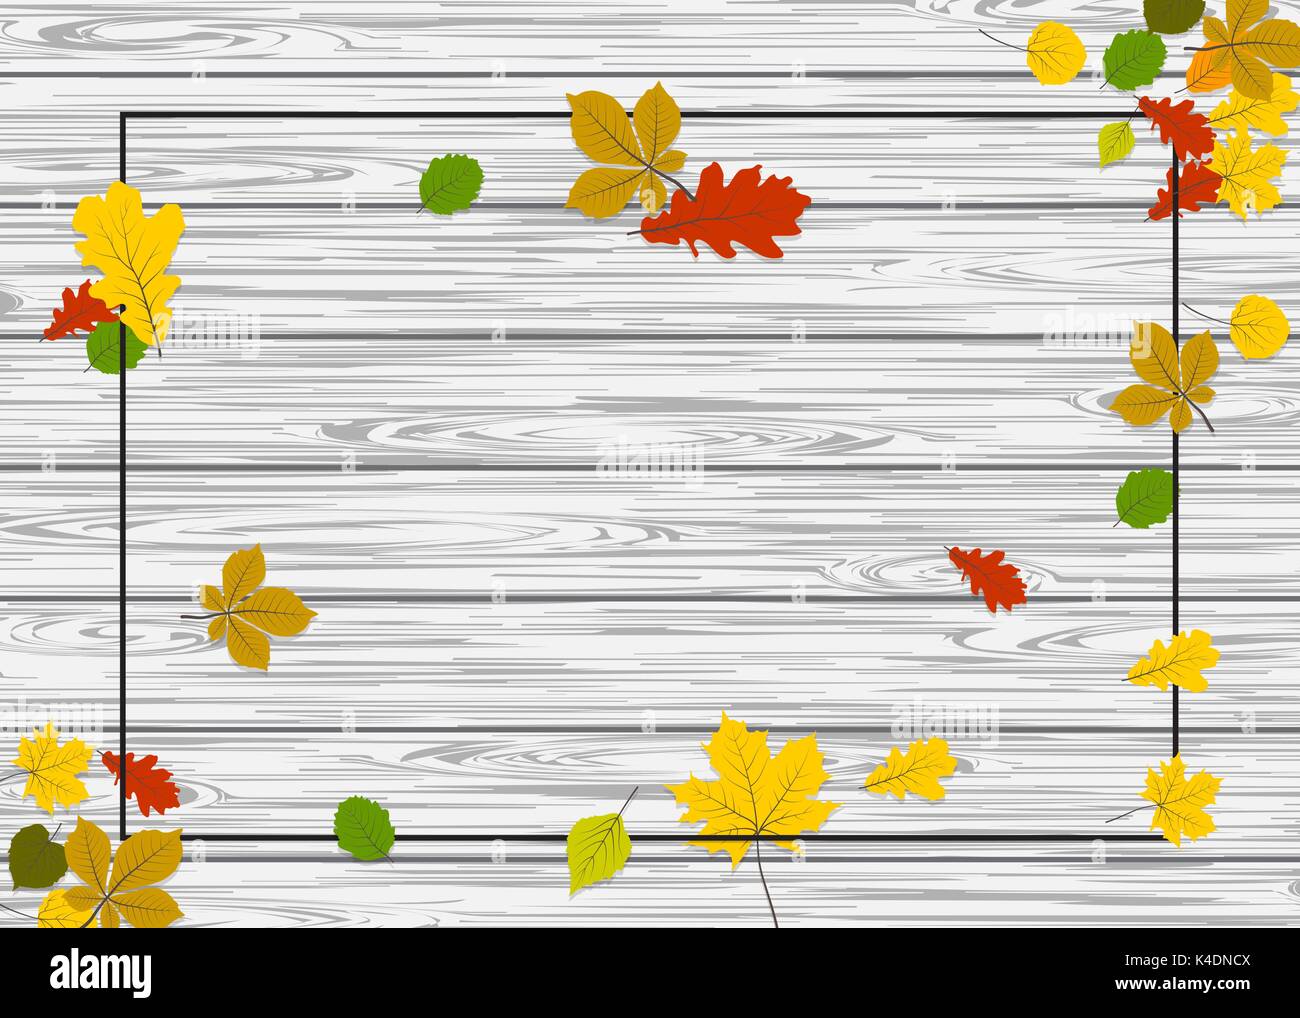 Tissu de fond frontière automne en bois Illustration de Vecteur